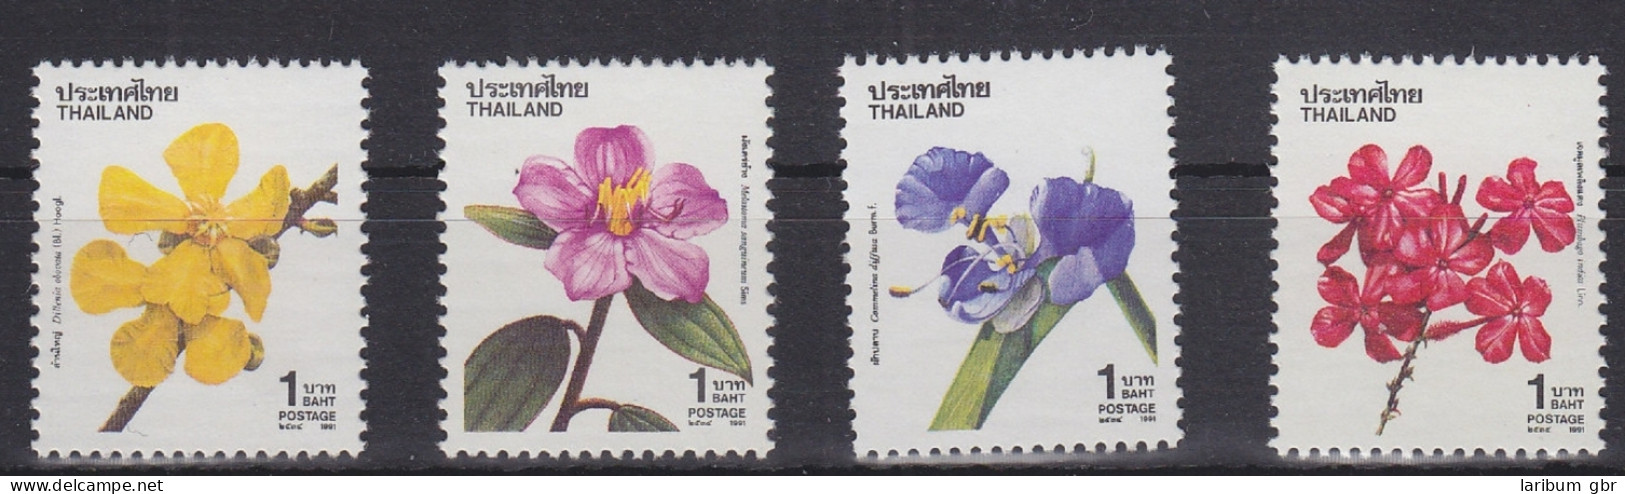 Thailand 1443-1446 Postfrisch Natur Blumen, MNH #RA172 - Thaïlande